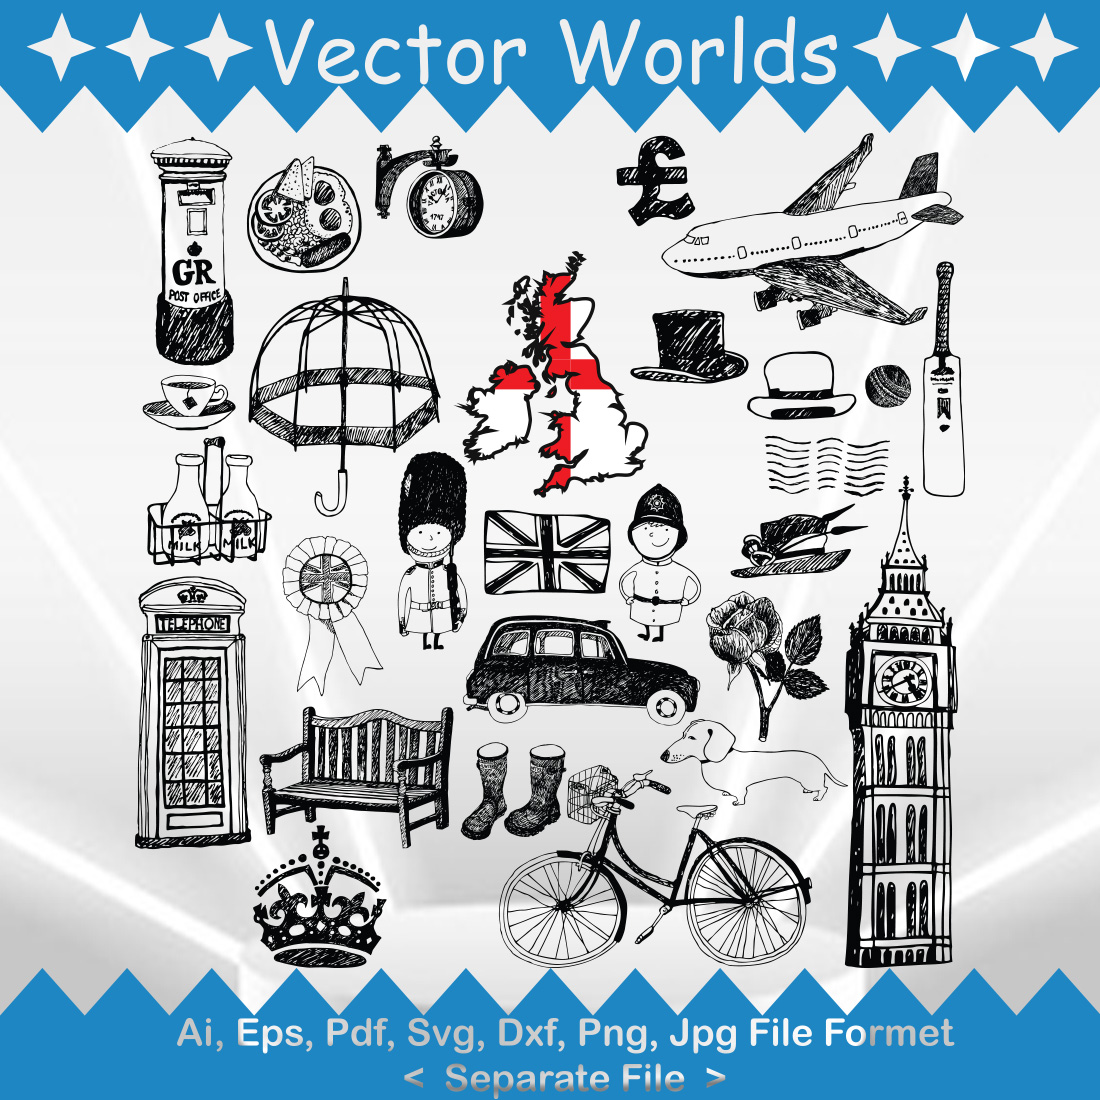 United Kingdom SVG Vector Design cover image.